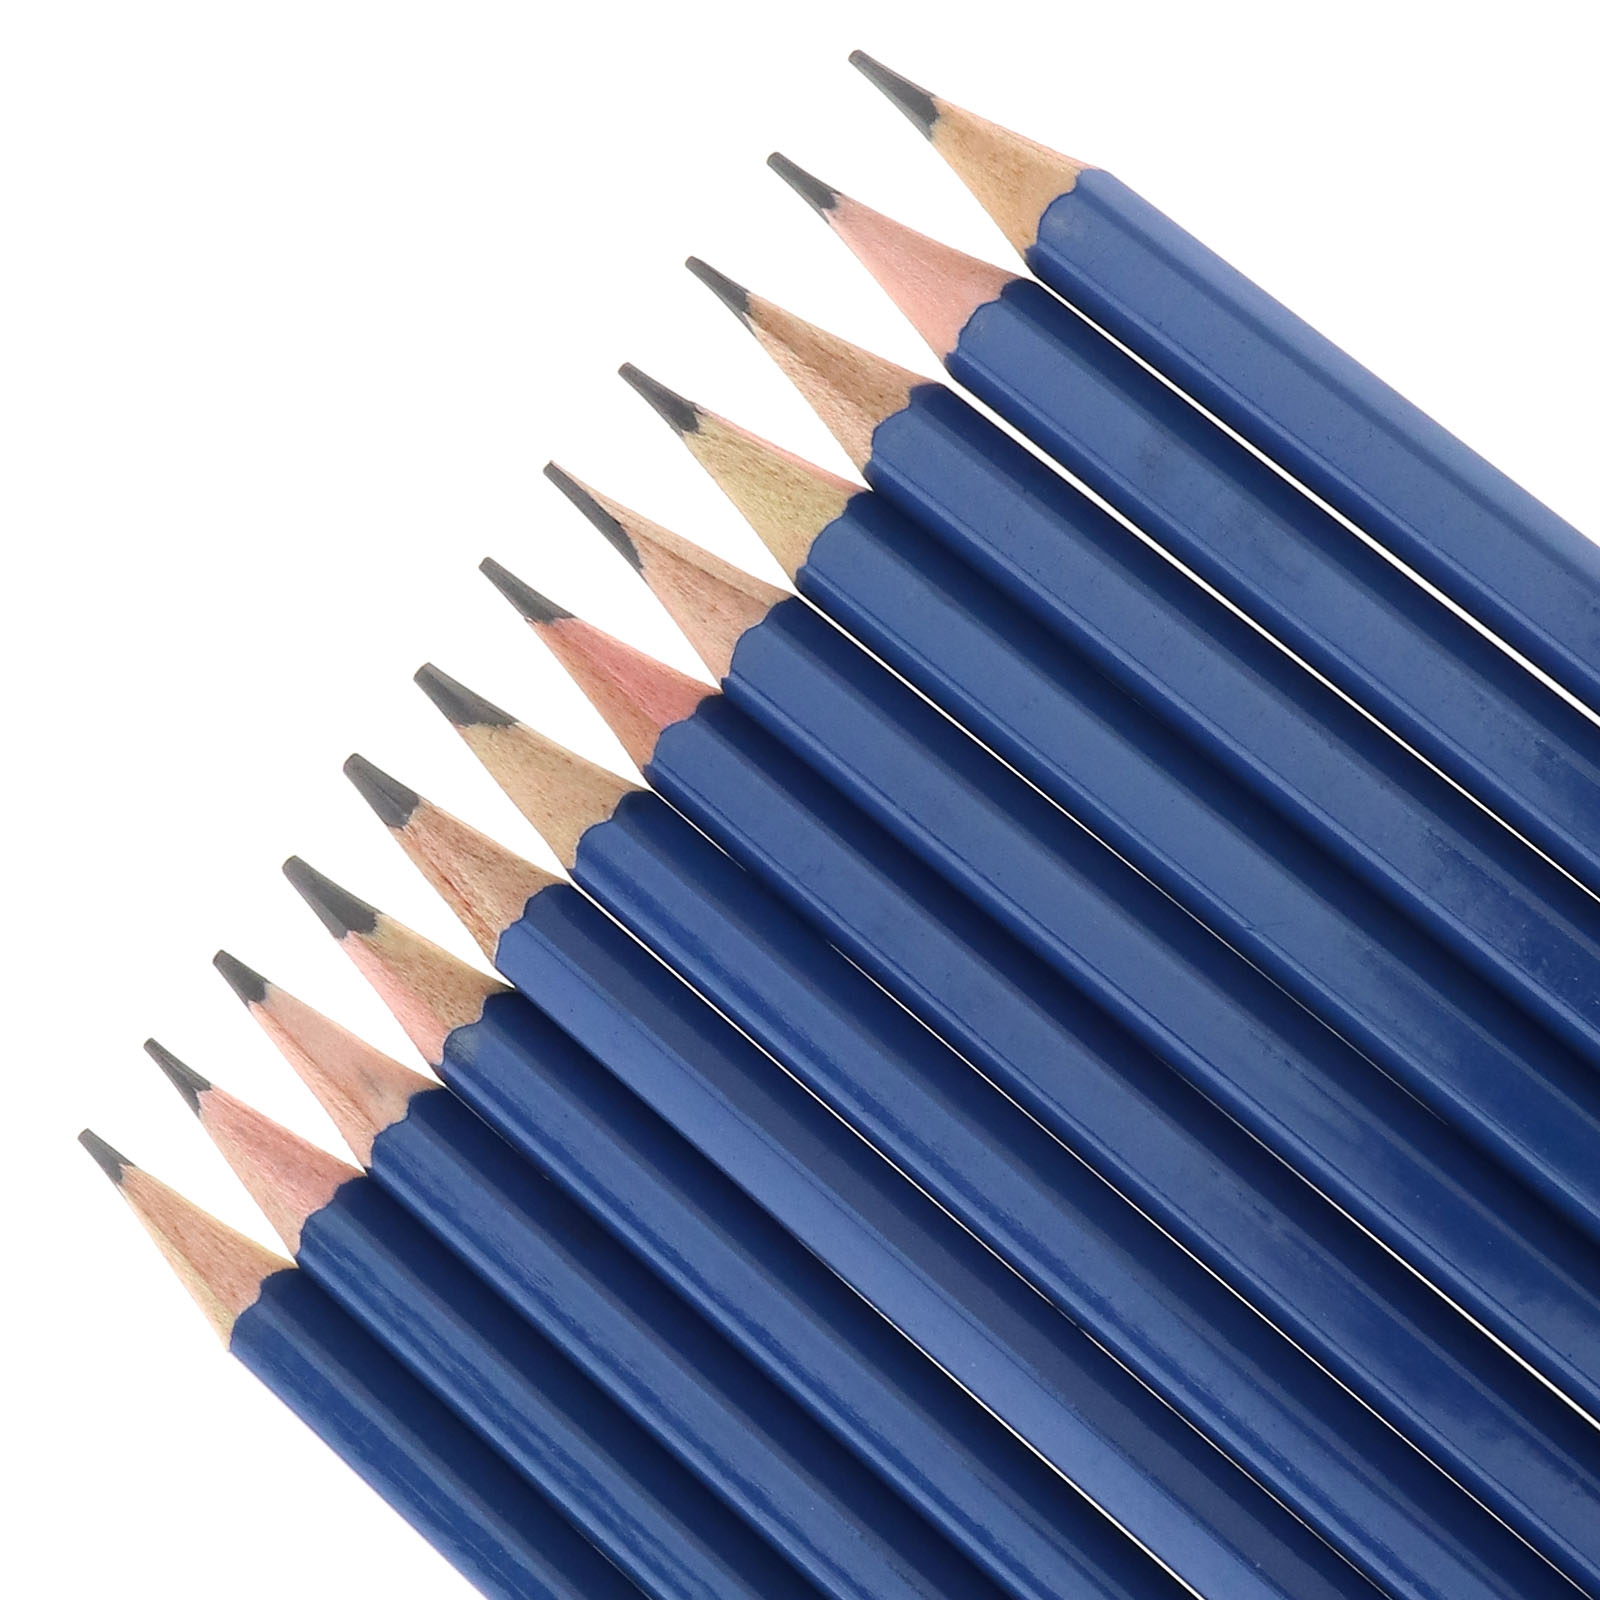 Pencil Eraser For Sketching